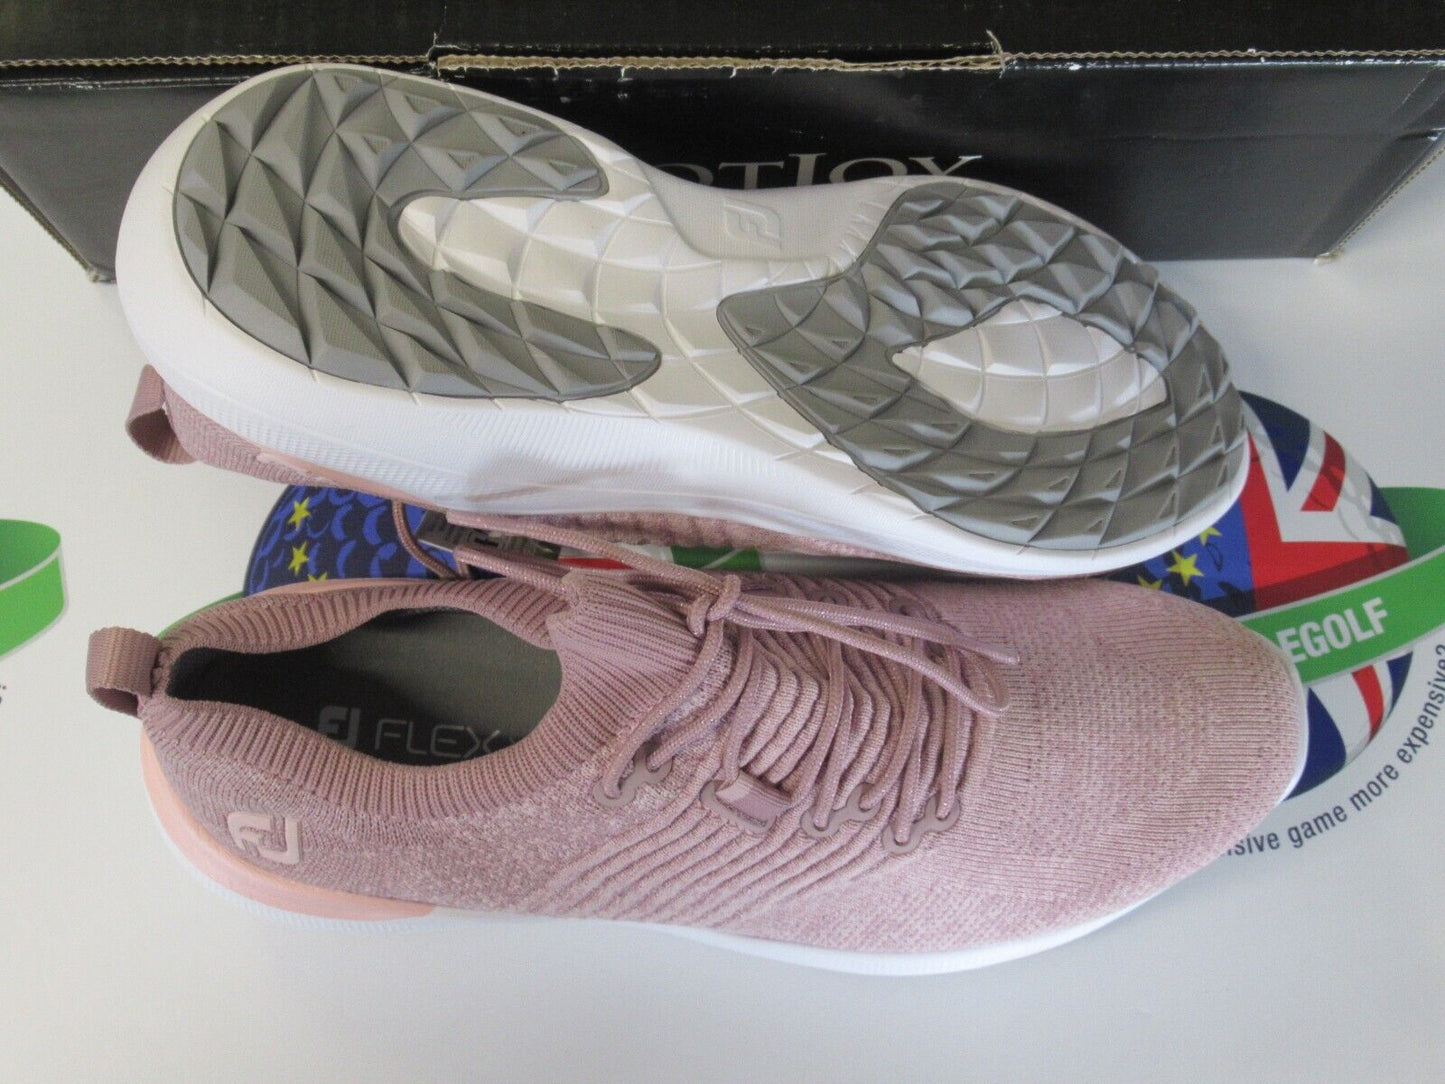 footjoy flex xp womens golf shoes pink heather 95335k uk size 4 medium